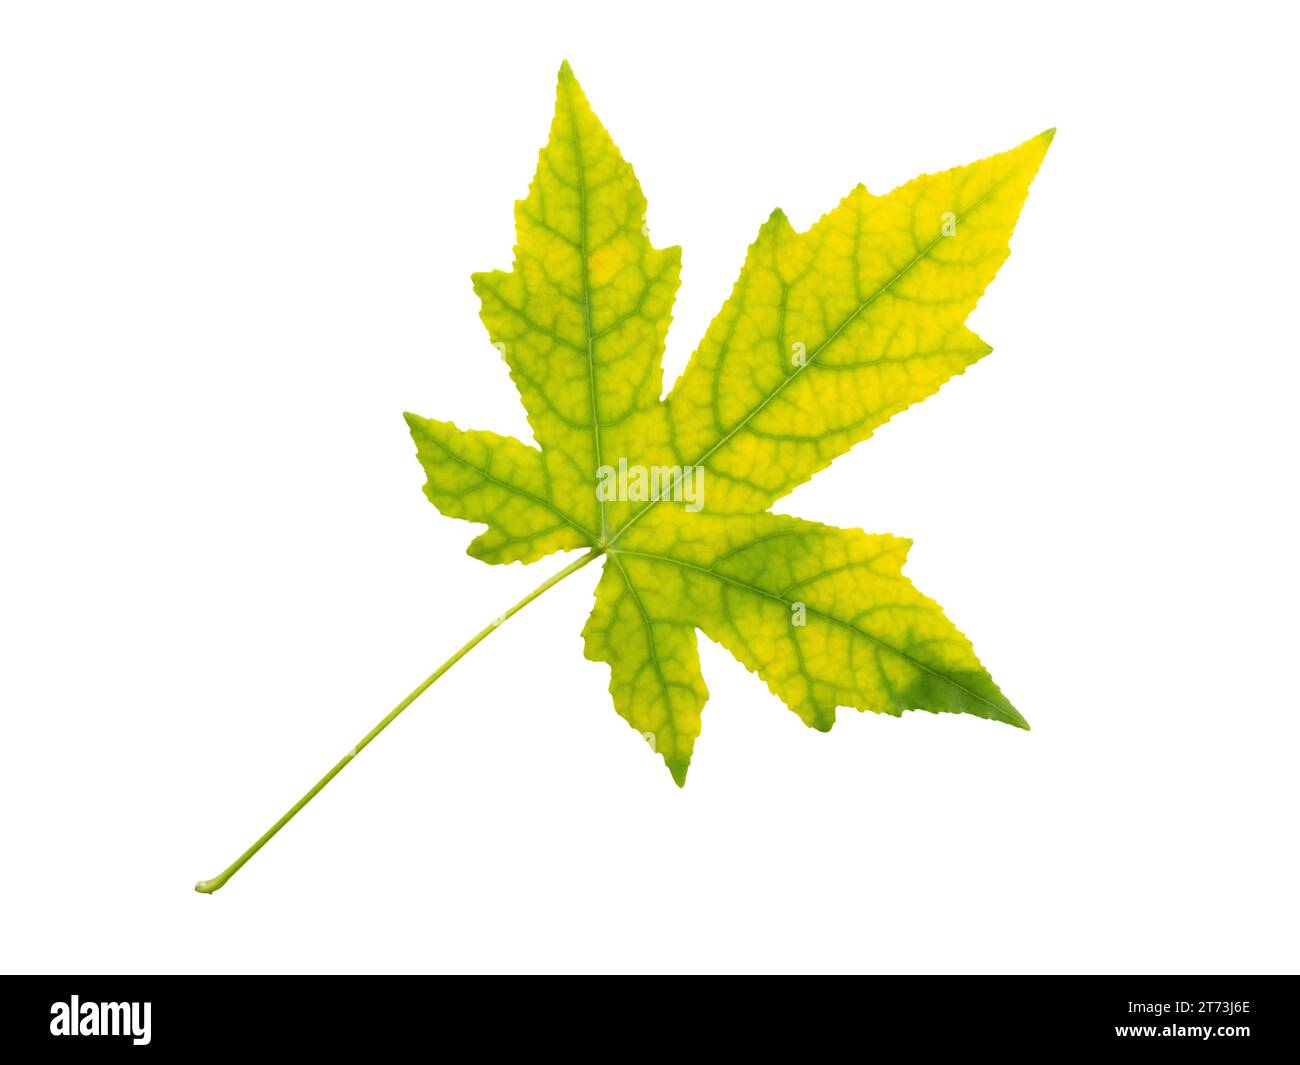 Albero d'acero foglie verdi gialle autunnali isolate su sfondo bianco. Fogliame autunnale Acer. Foto Stock